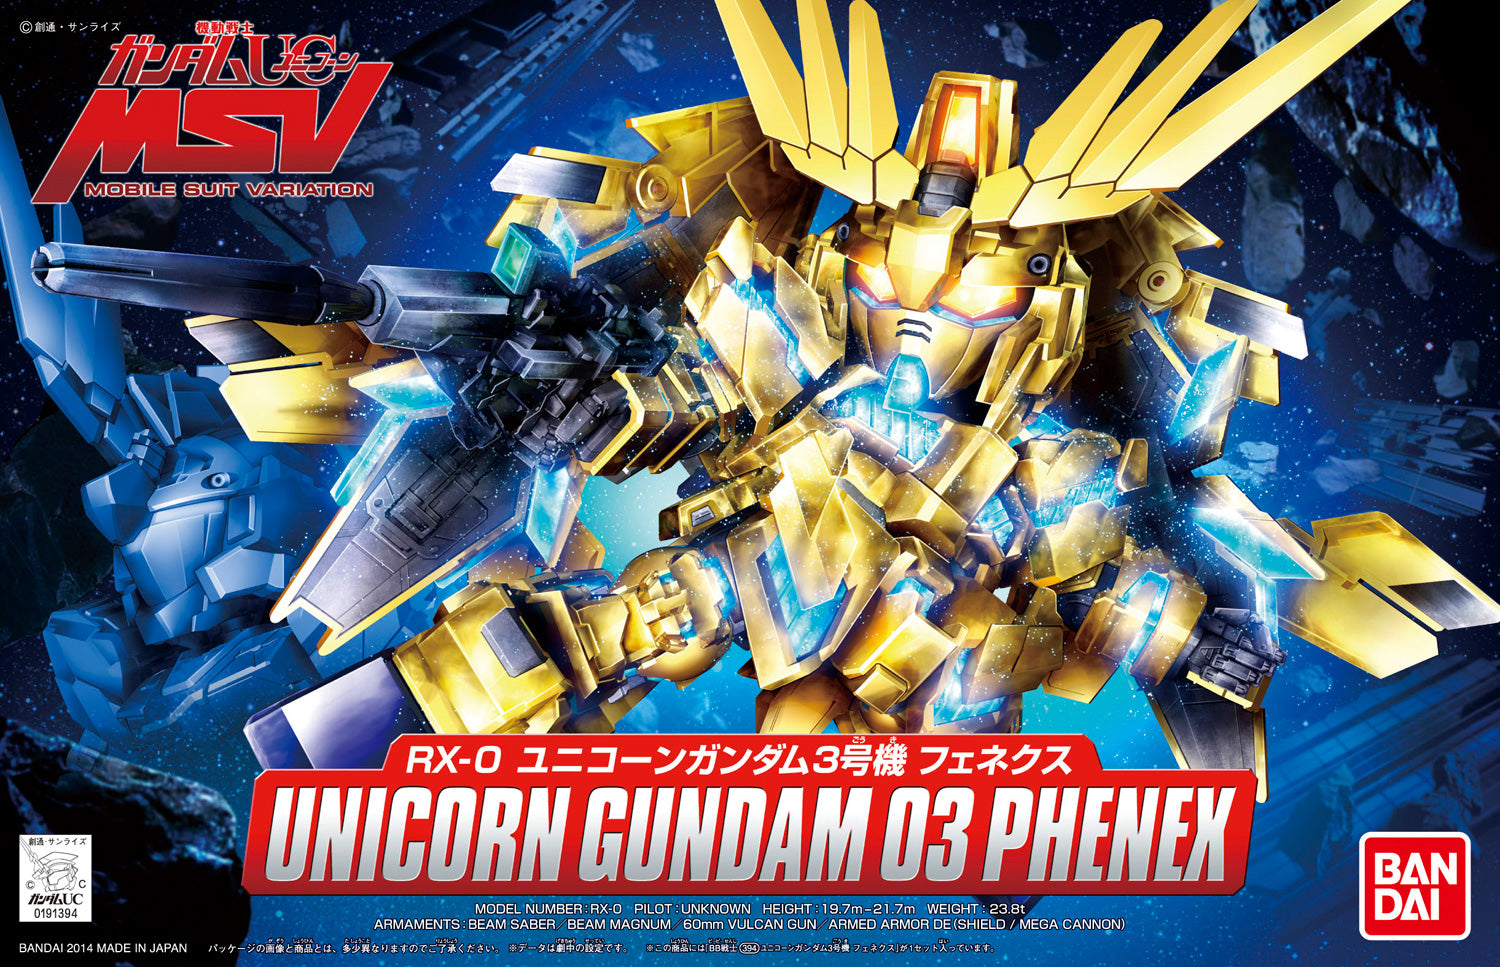 SD Gundam BB394 Senshi Unicorn Gundam 03 Phenex